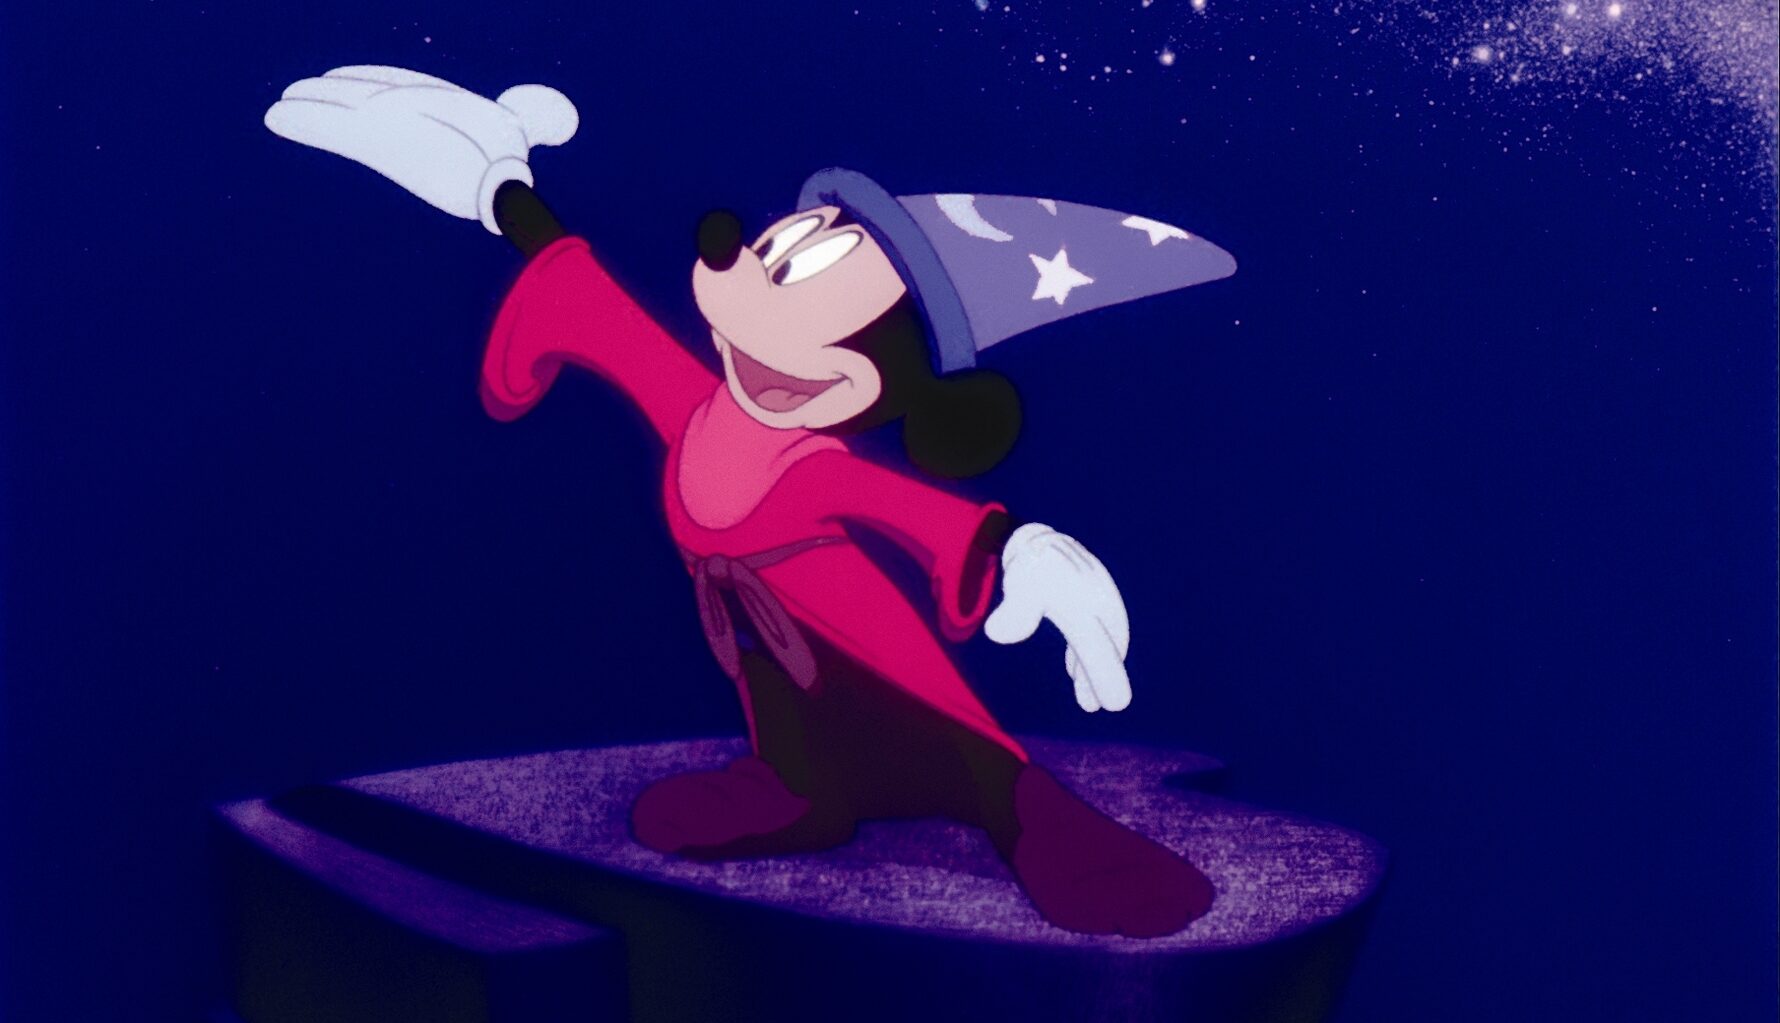 Αφιέρωμα στα 100 χρόνια Disney από τις Νύχτες Πρεμιέρας